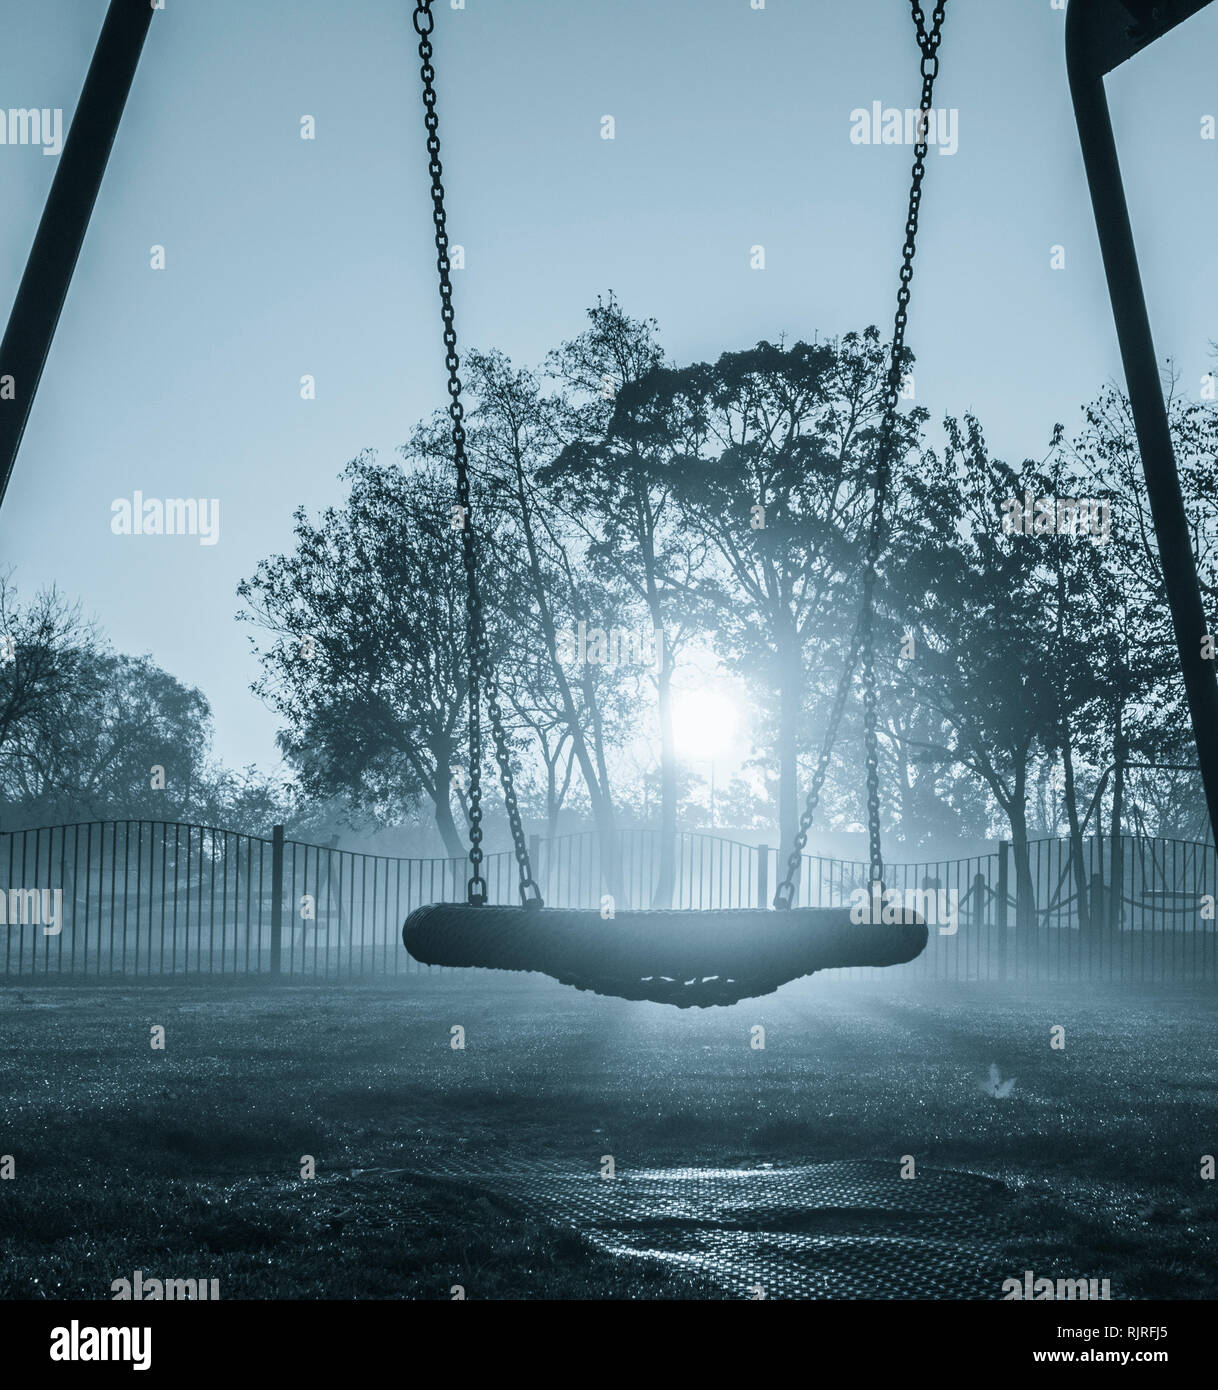 Swings in public park on a misty morning. UK Stock Photo